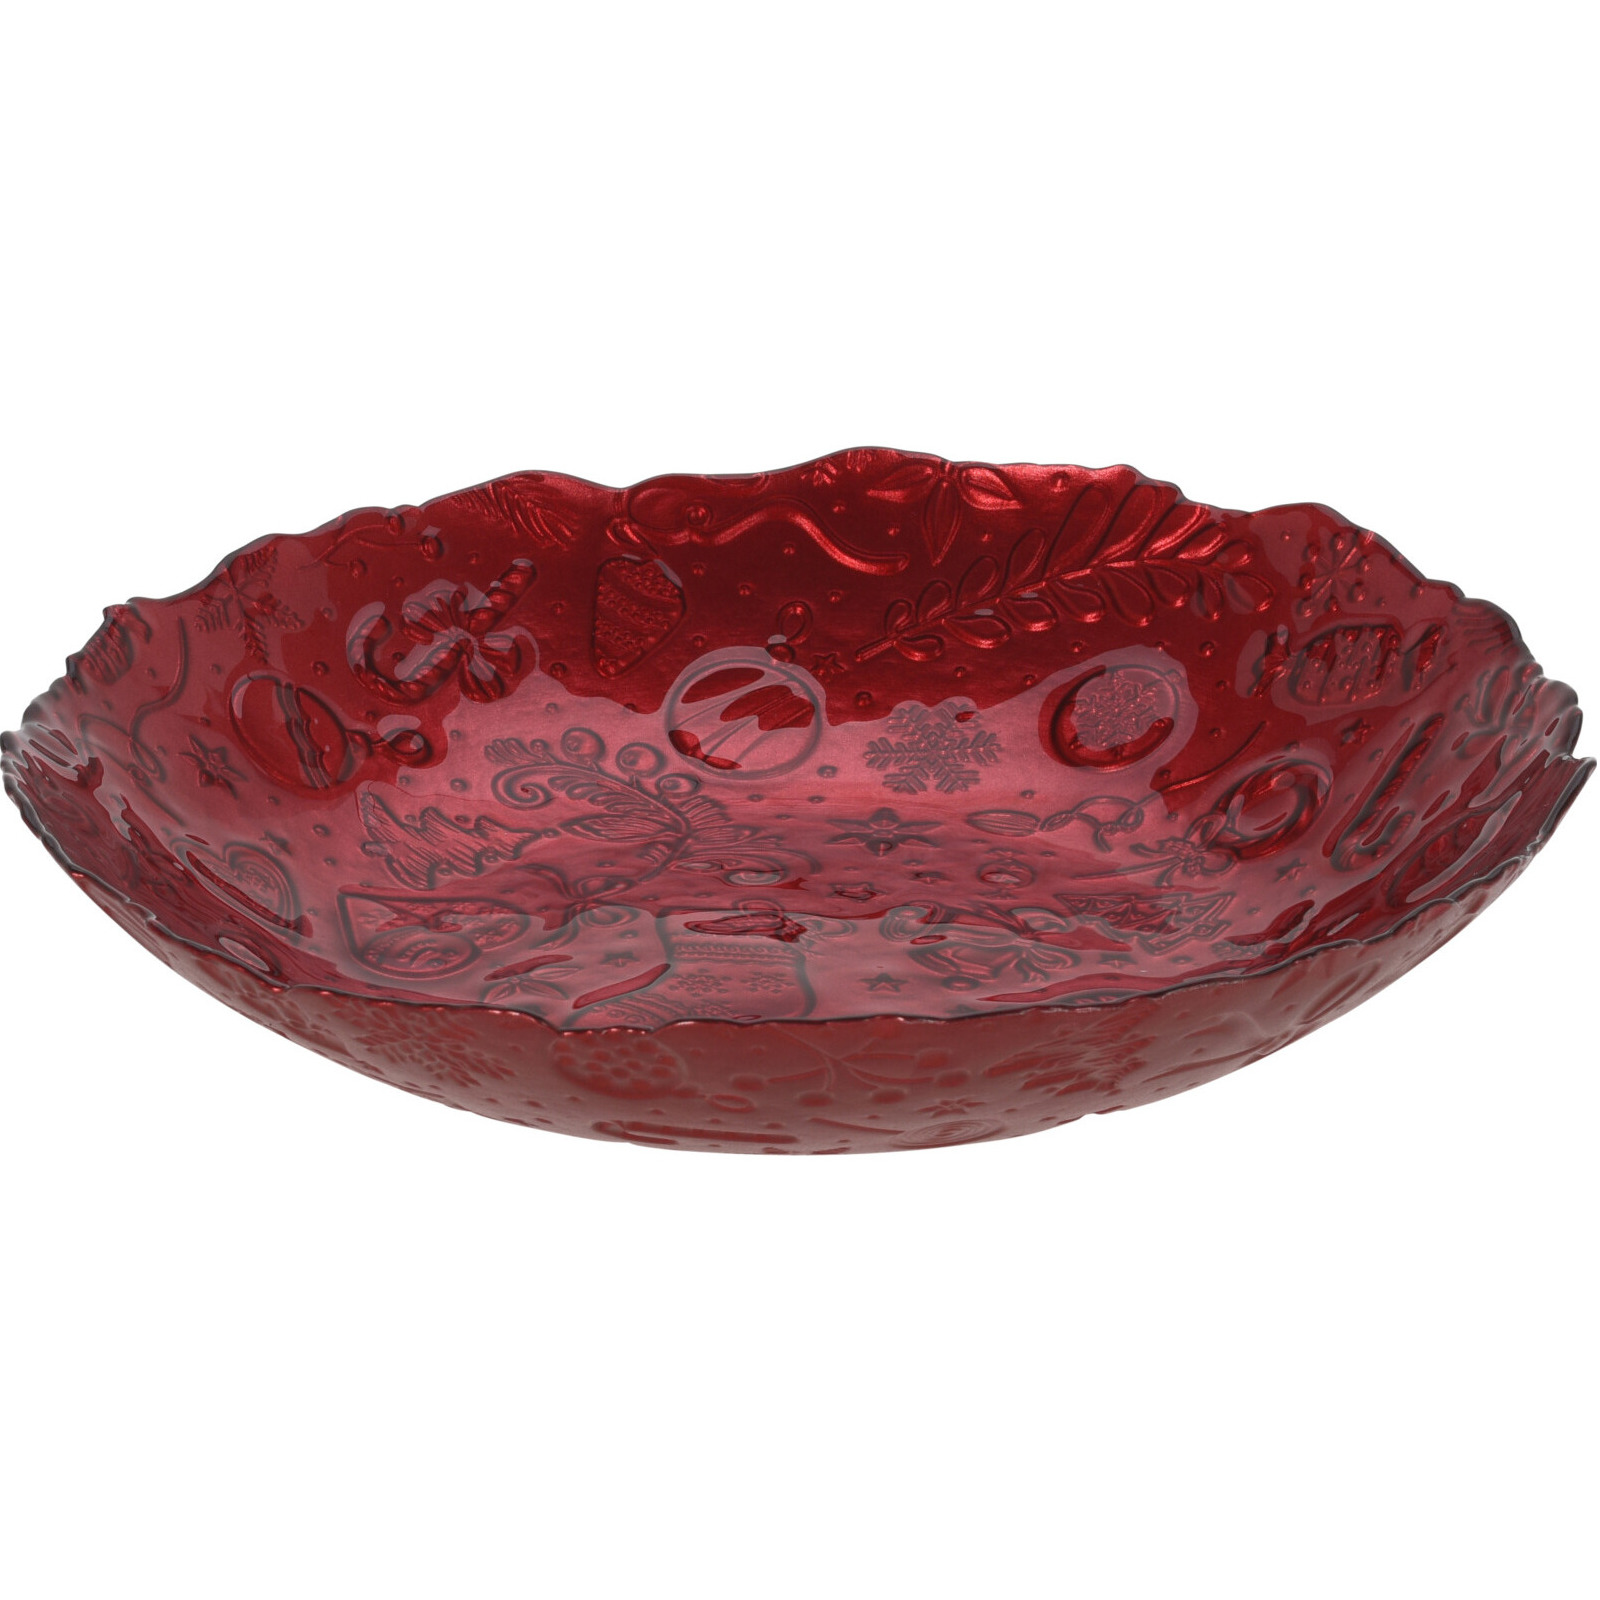 Glazen decoratie schaal-fruitschaal rood rond D30 x H6 cm